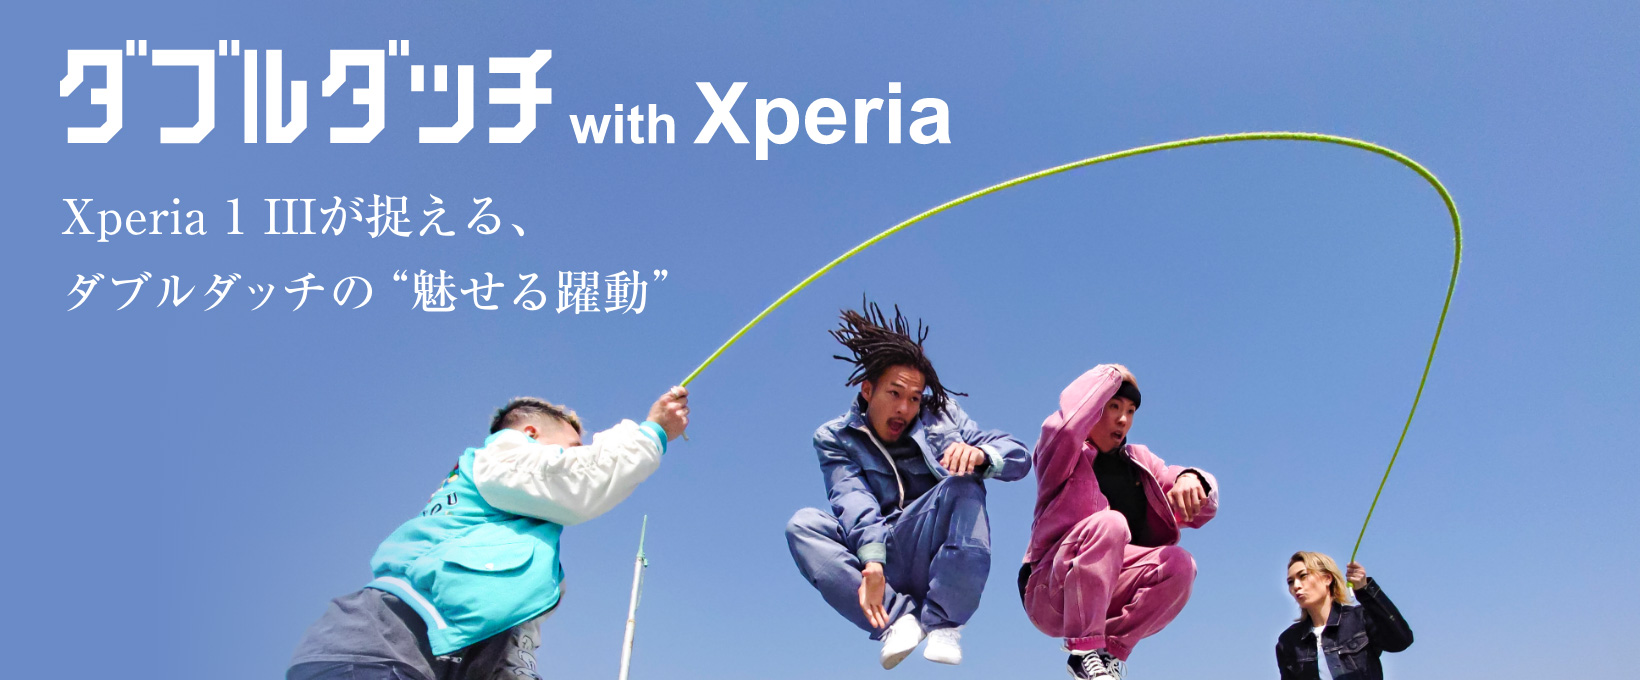 ダブルダッチ with Xperia Xperia 1 IIIが捉える、ダブルダッチの“魅せる躍動”